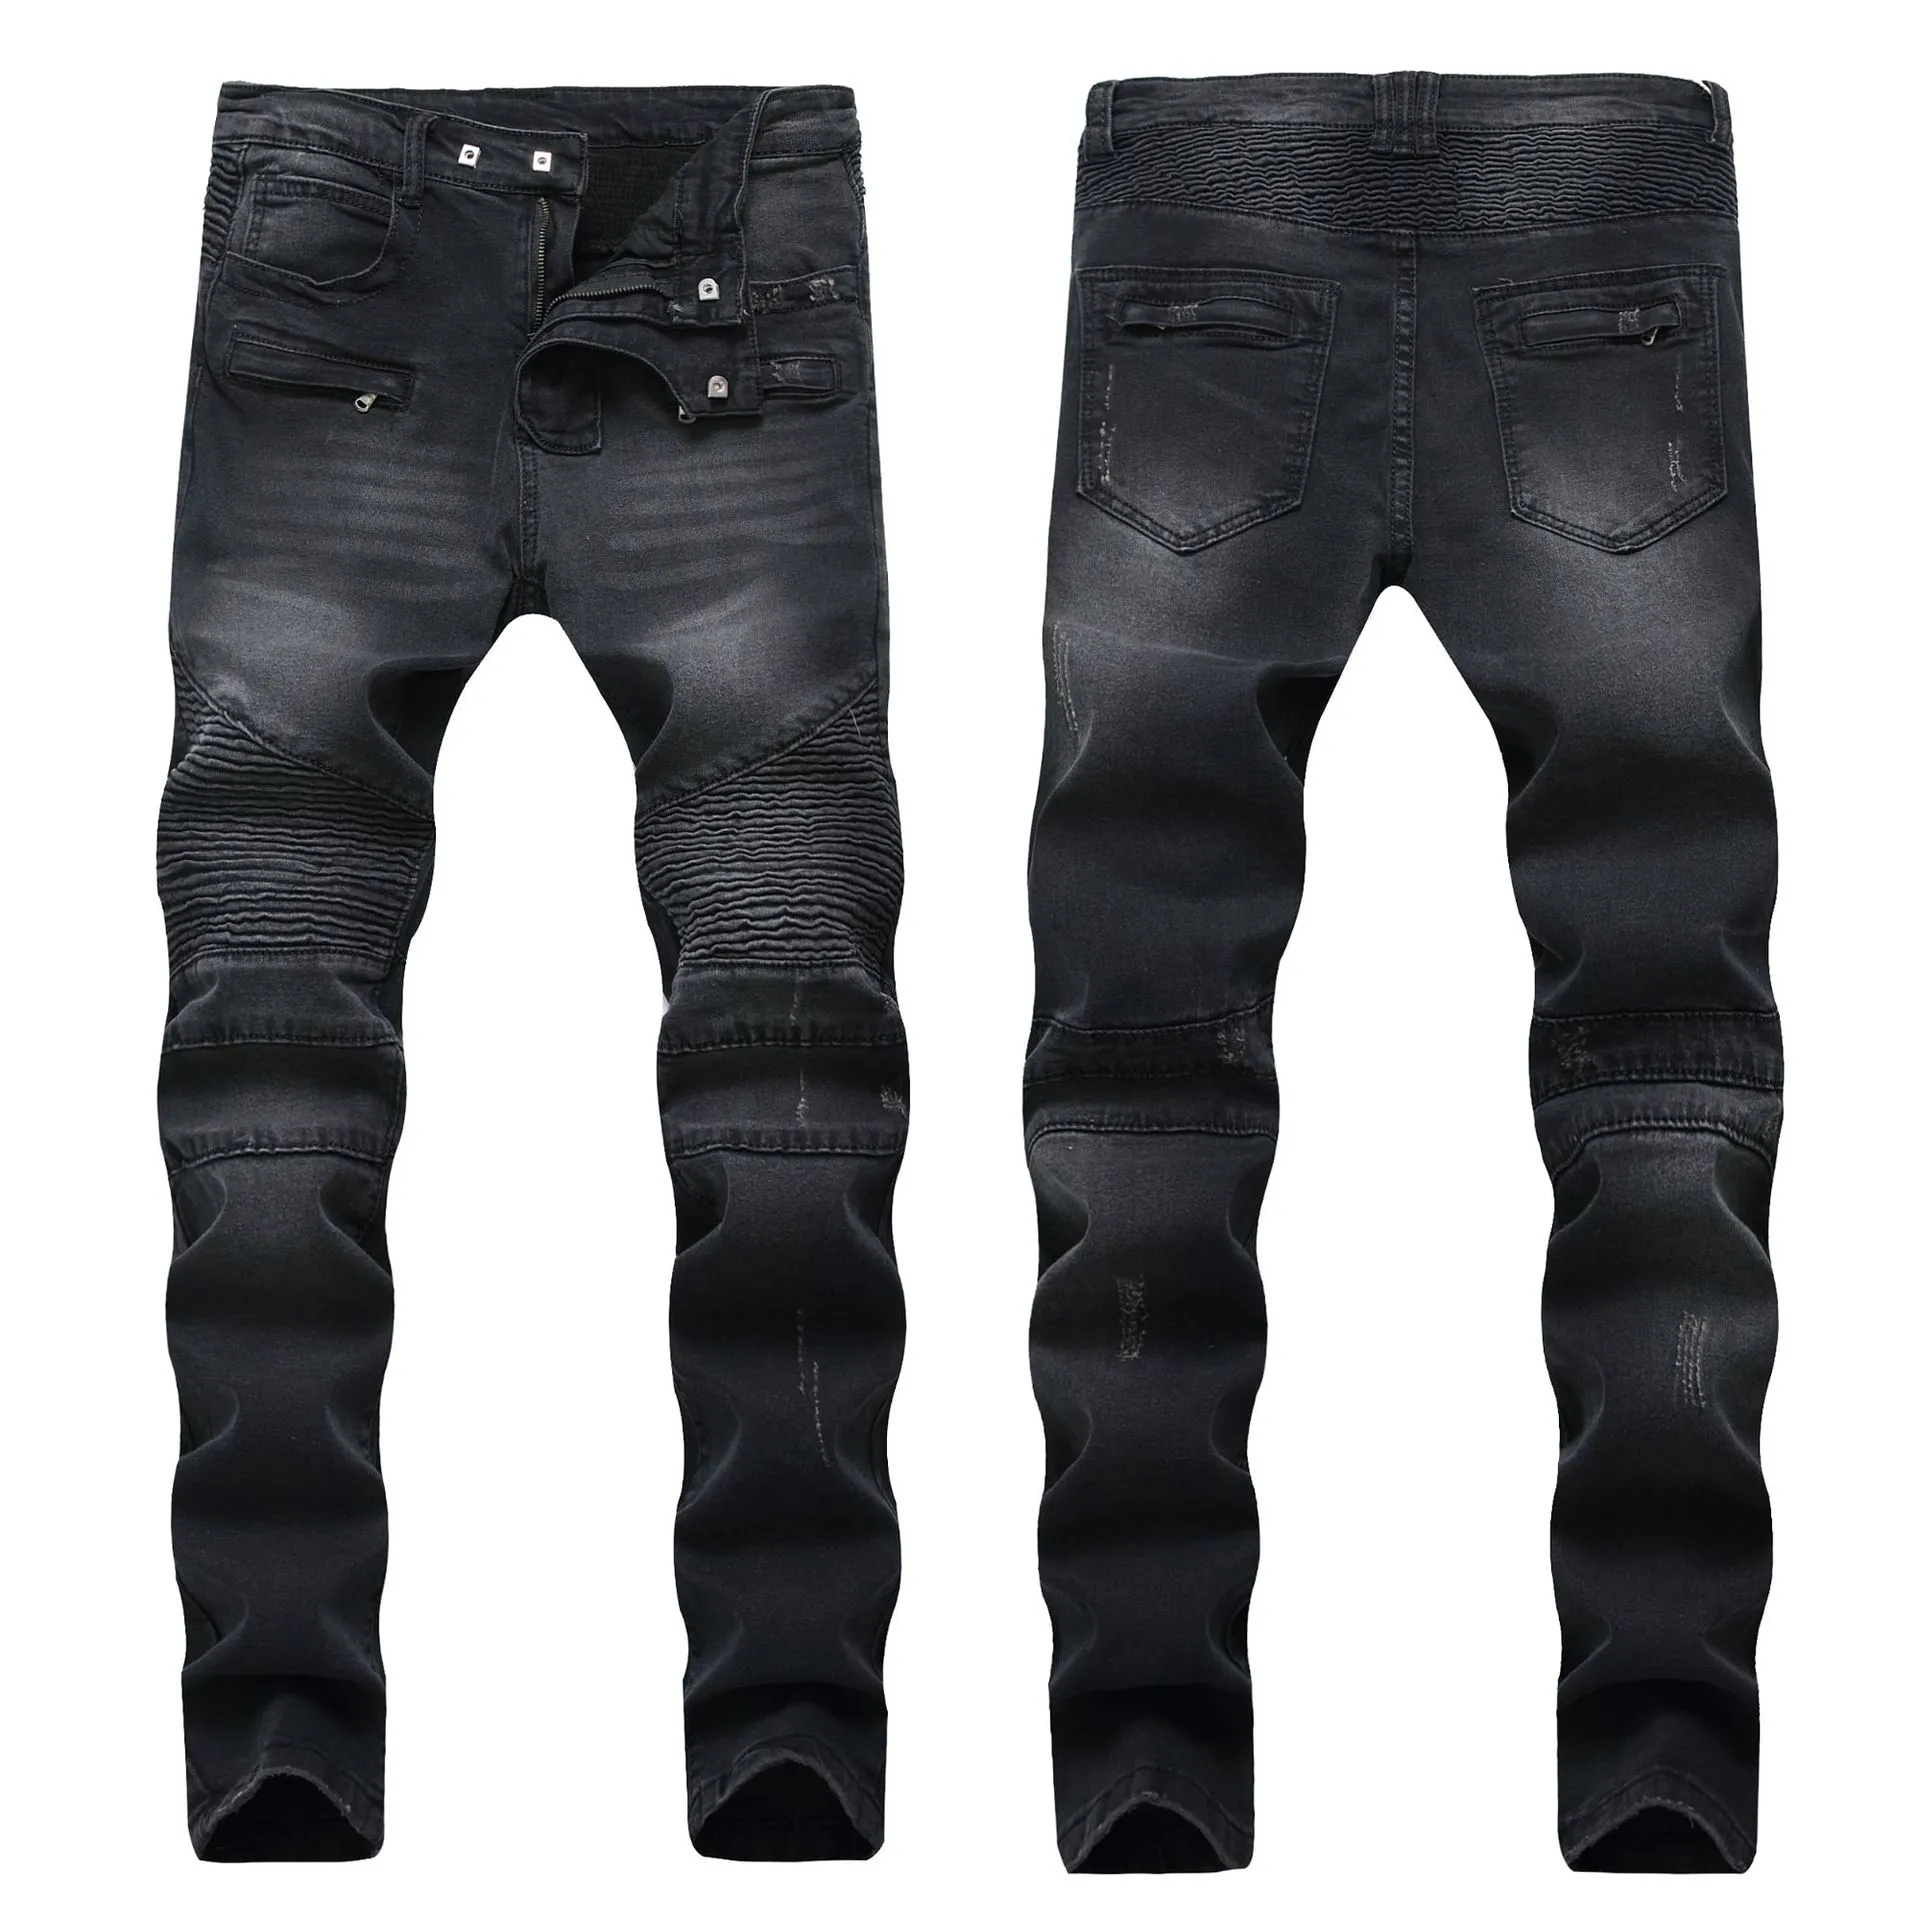 E-Baihui Erkekler Sıkıntılı Yırtık Skinny Jeans Moda Tasarımcı Kotu İnce Motosiklet Moto Biker Nedensel Erkek Denim Pantolon Kalça H336B